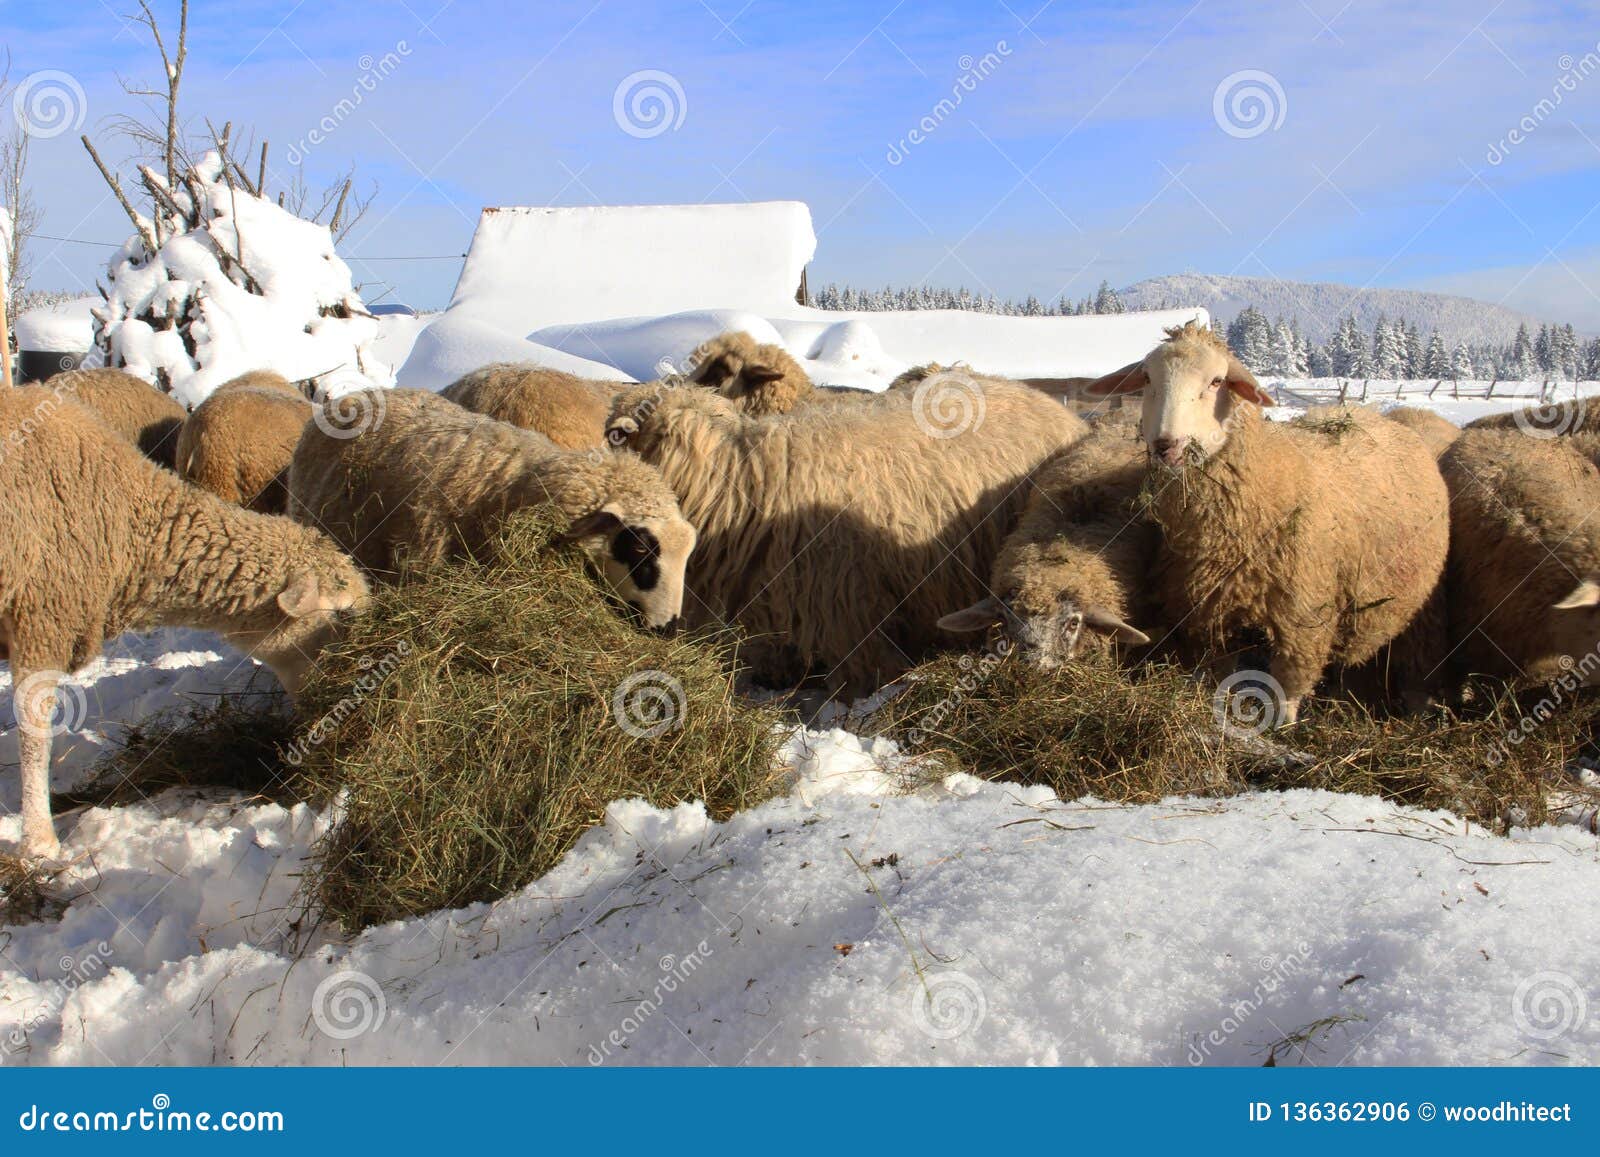 Bergschafe genießen in einem nahrhaften Heu. Bild des Schafs im Berg, der mit dem Heu gelegt auf den Schnee einzieht